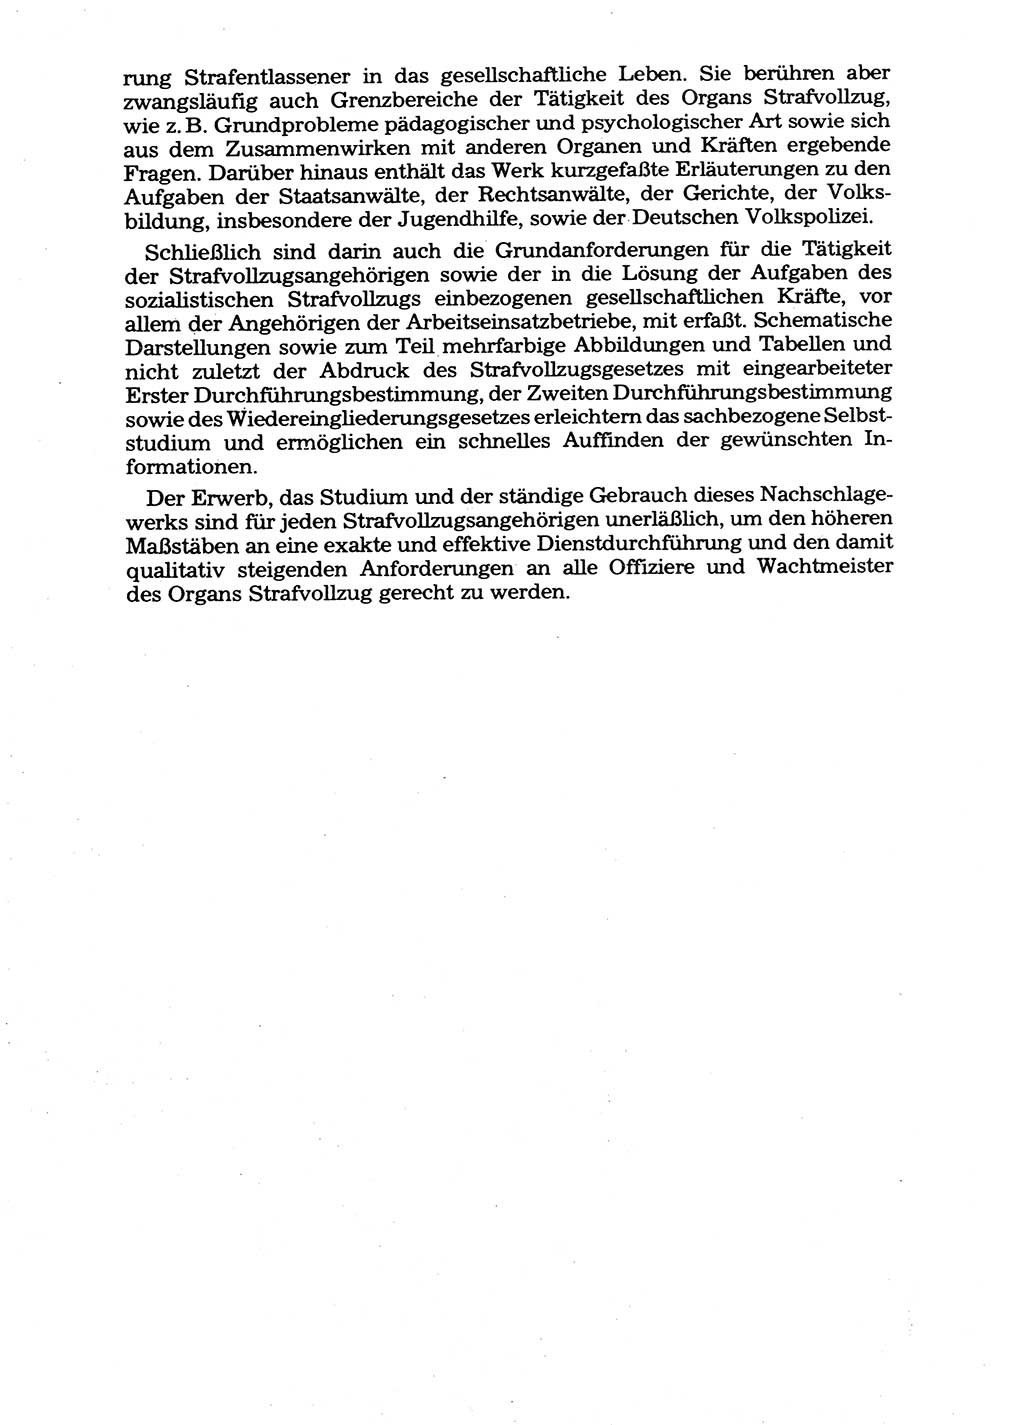 Handbuch für operative Dienste, Abteilung Strafvollzug (SV) [Ministerium des Innern (MdI) Deutsche Demokratische Republik (DDR)] 1981, Seite 184 (Hb. op. D. Abt. SV MdI DDR 1981, S. 184)